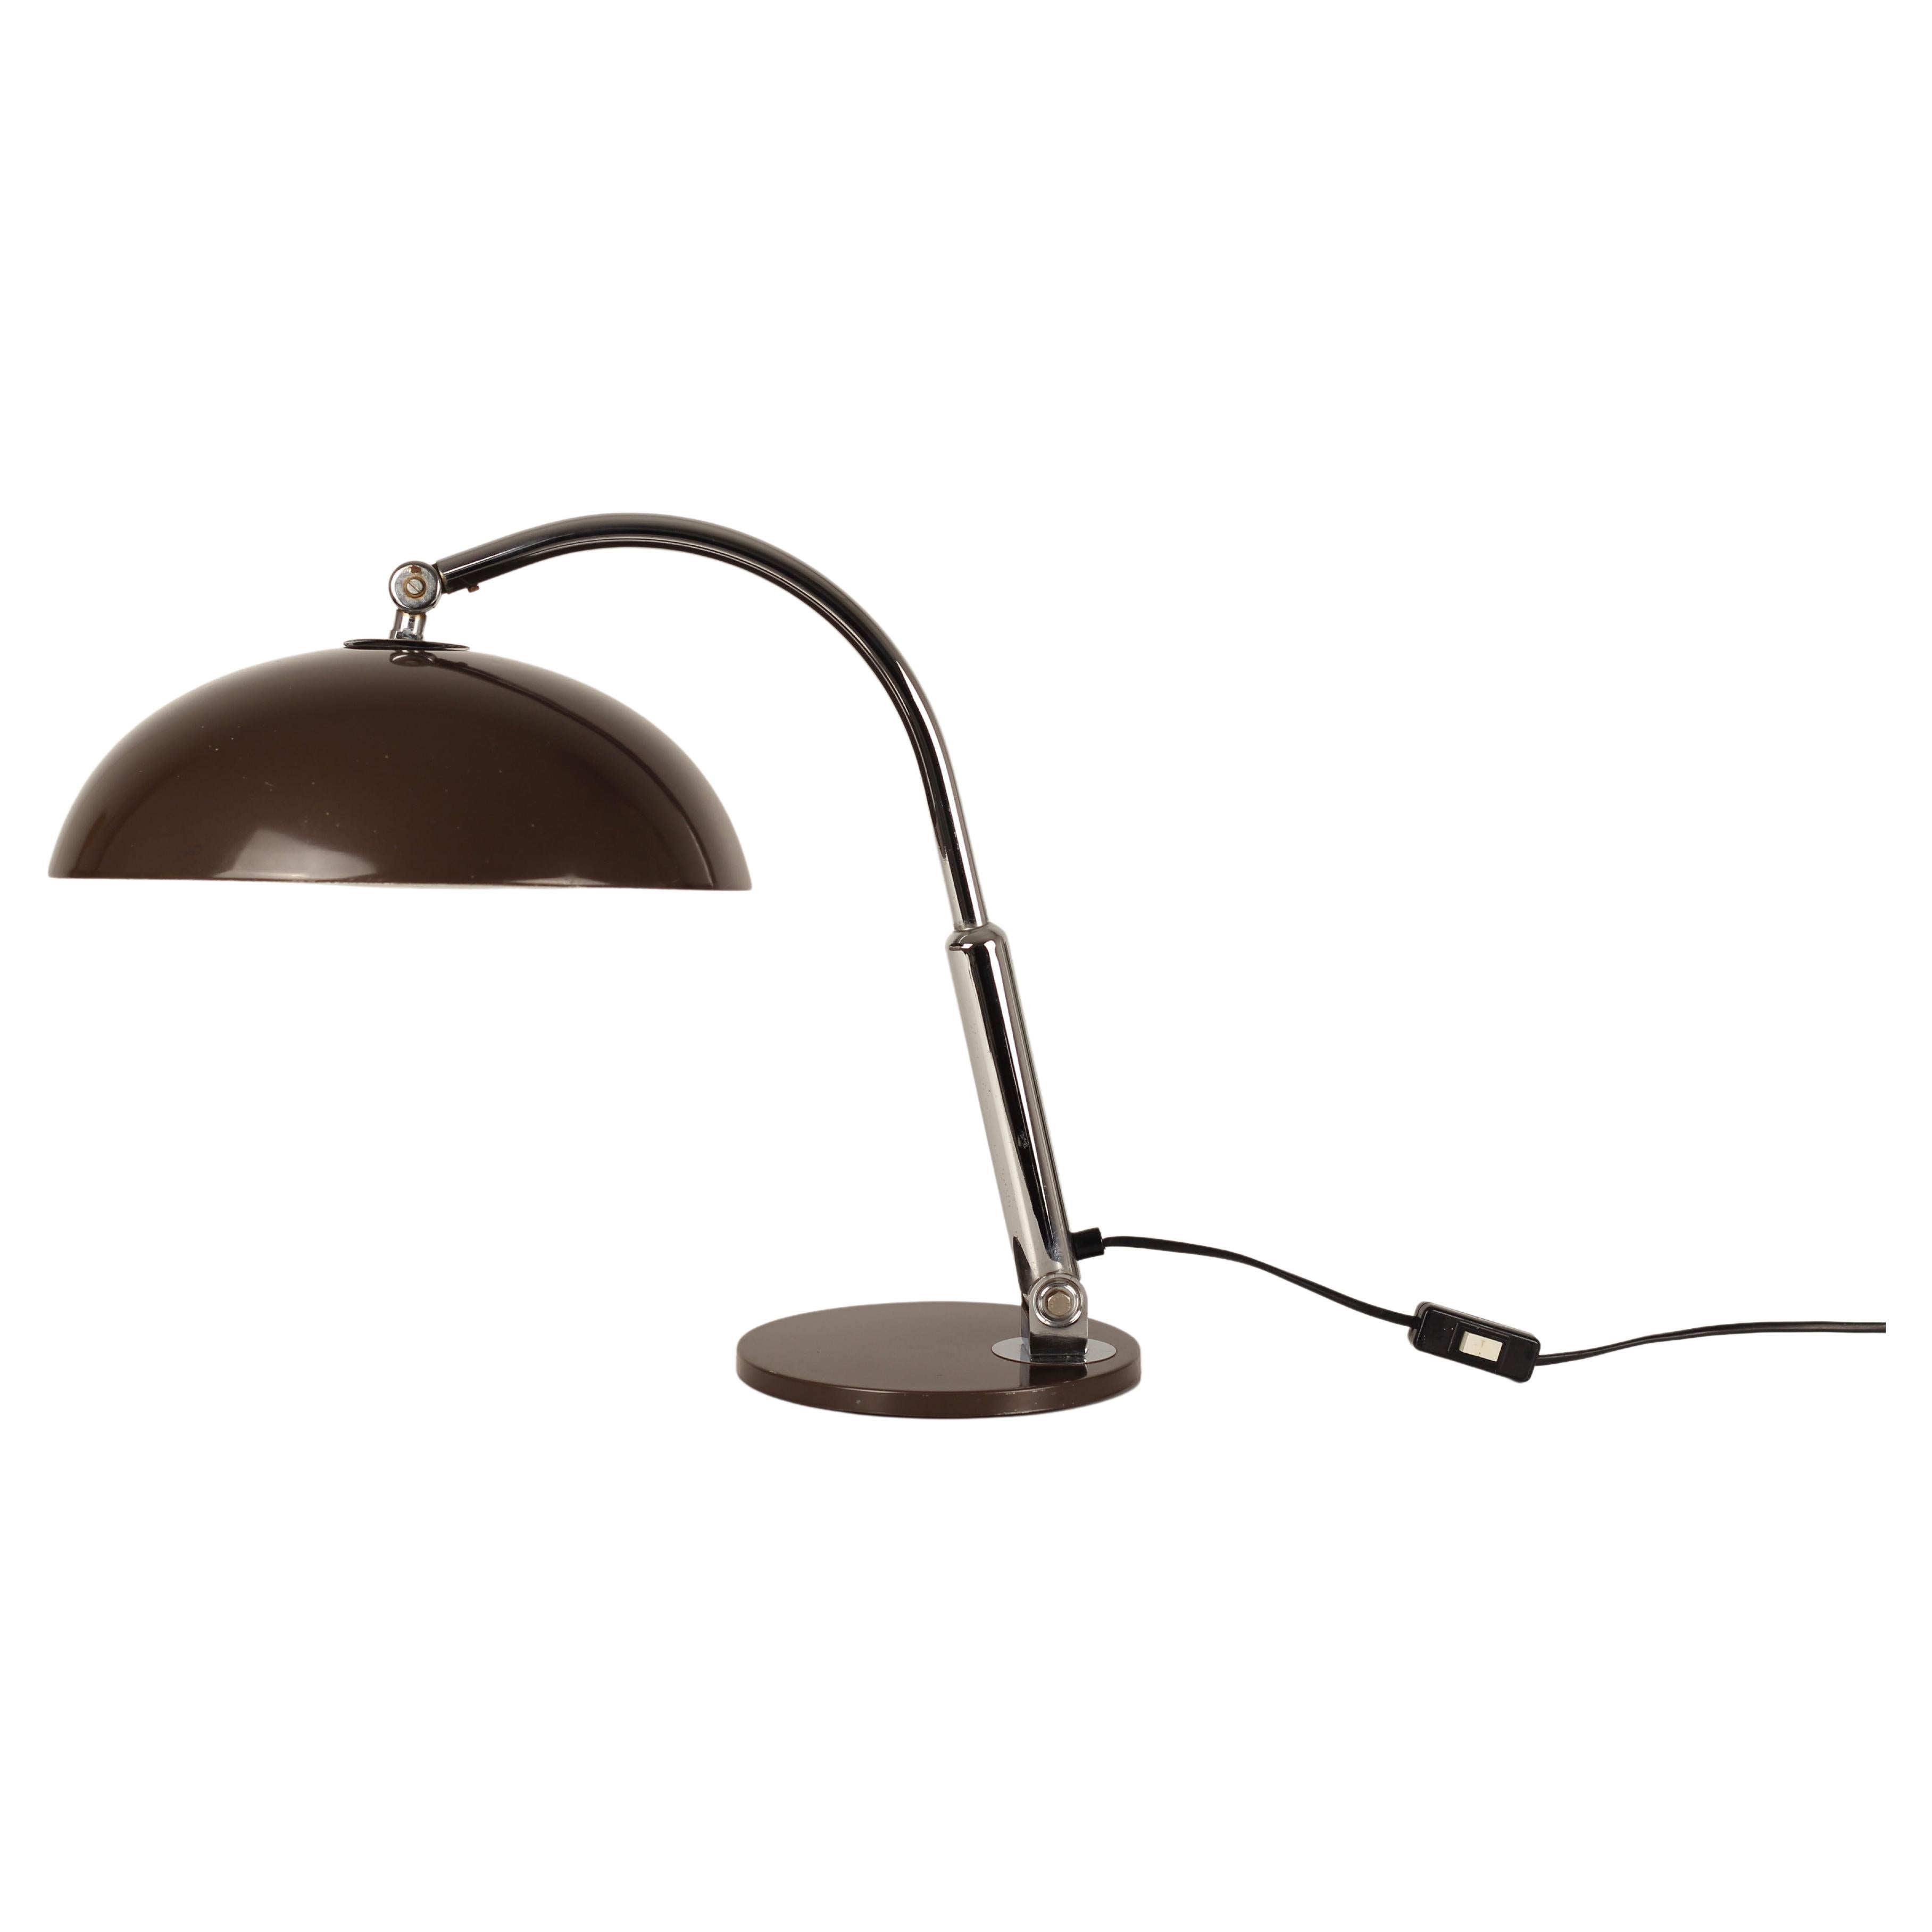 Lampe de bureau Hala Zeist dans le style Bauhaus Design/One, années 1930-1960